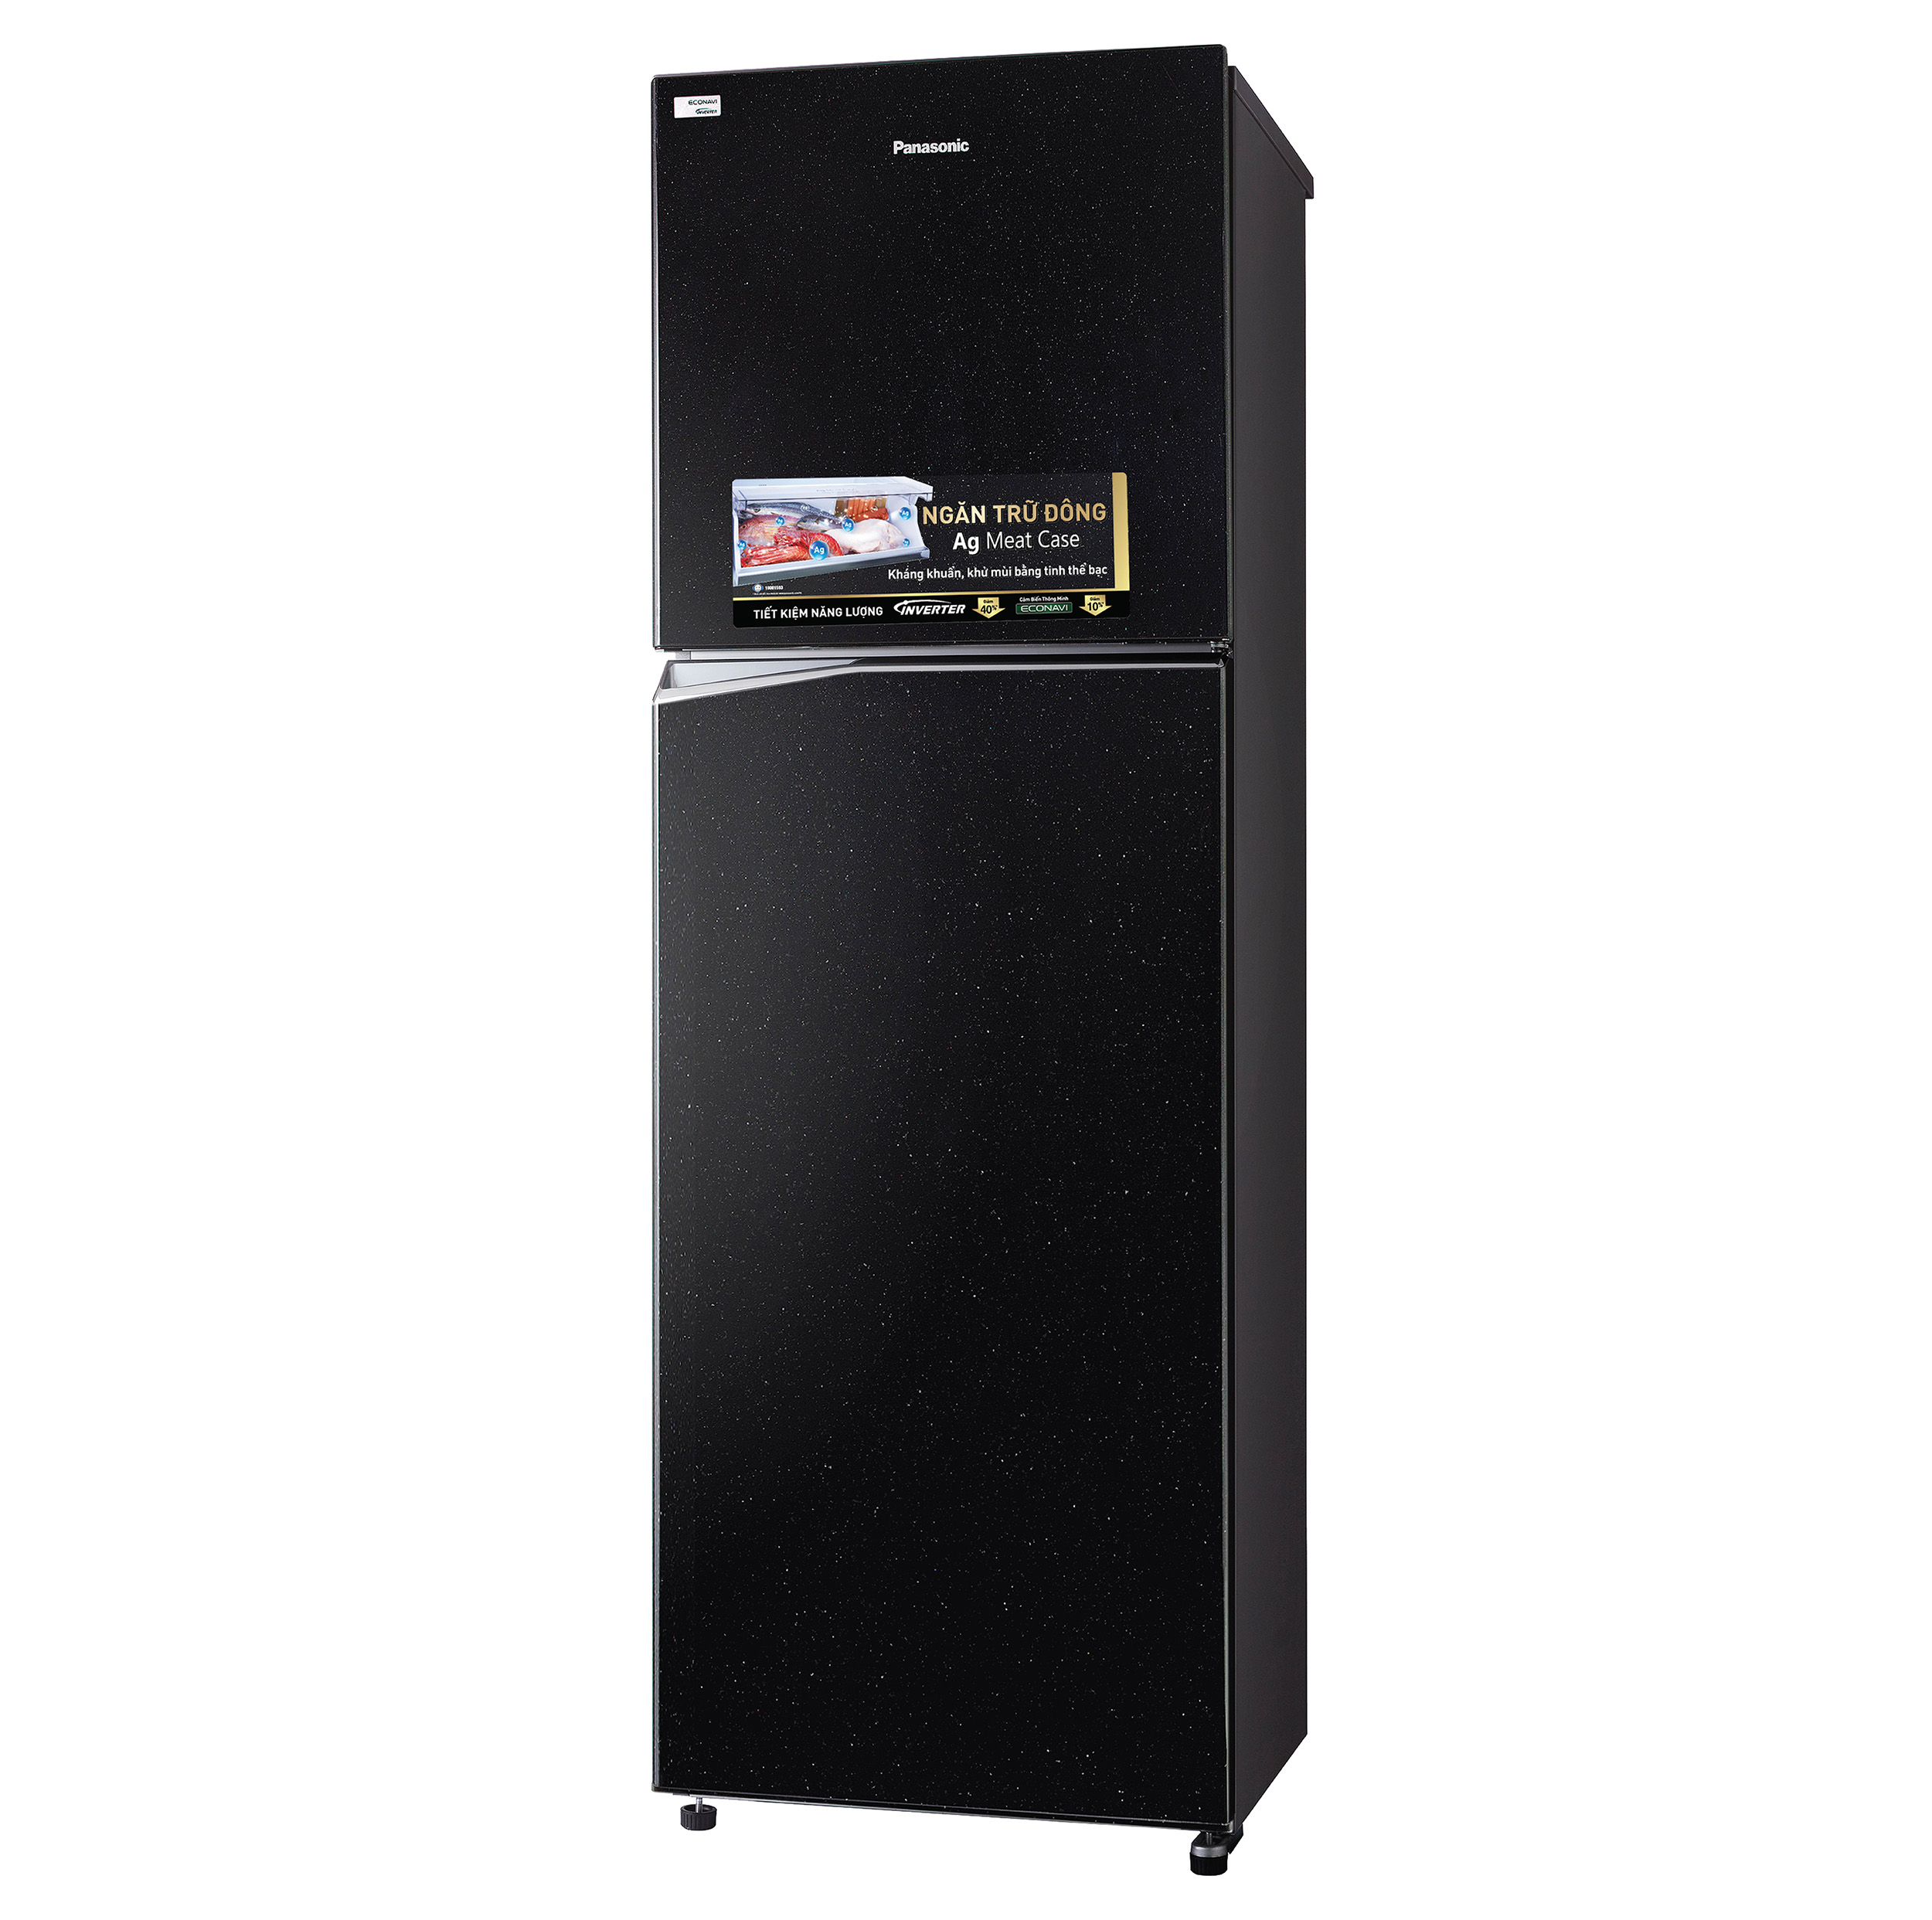 Tủ lạnh Panasonic  Inverter NR-BL359PKVN 326 lít - Chính hãng